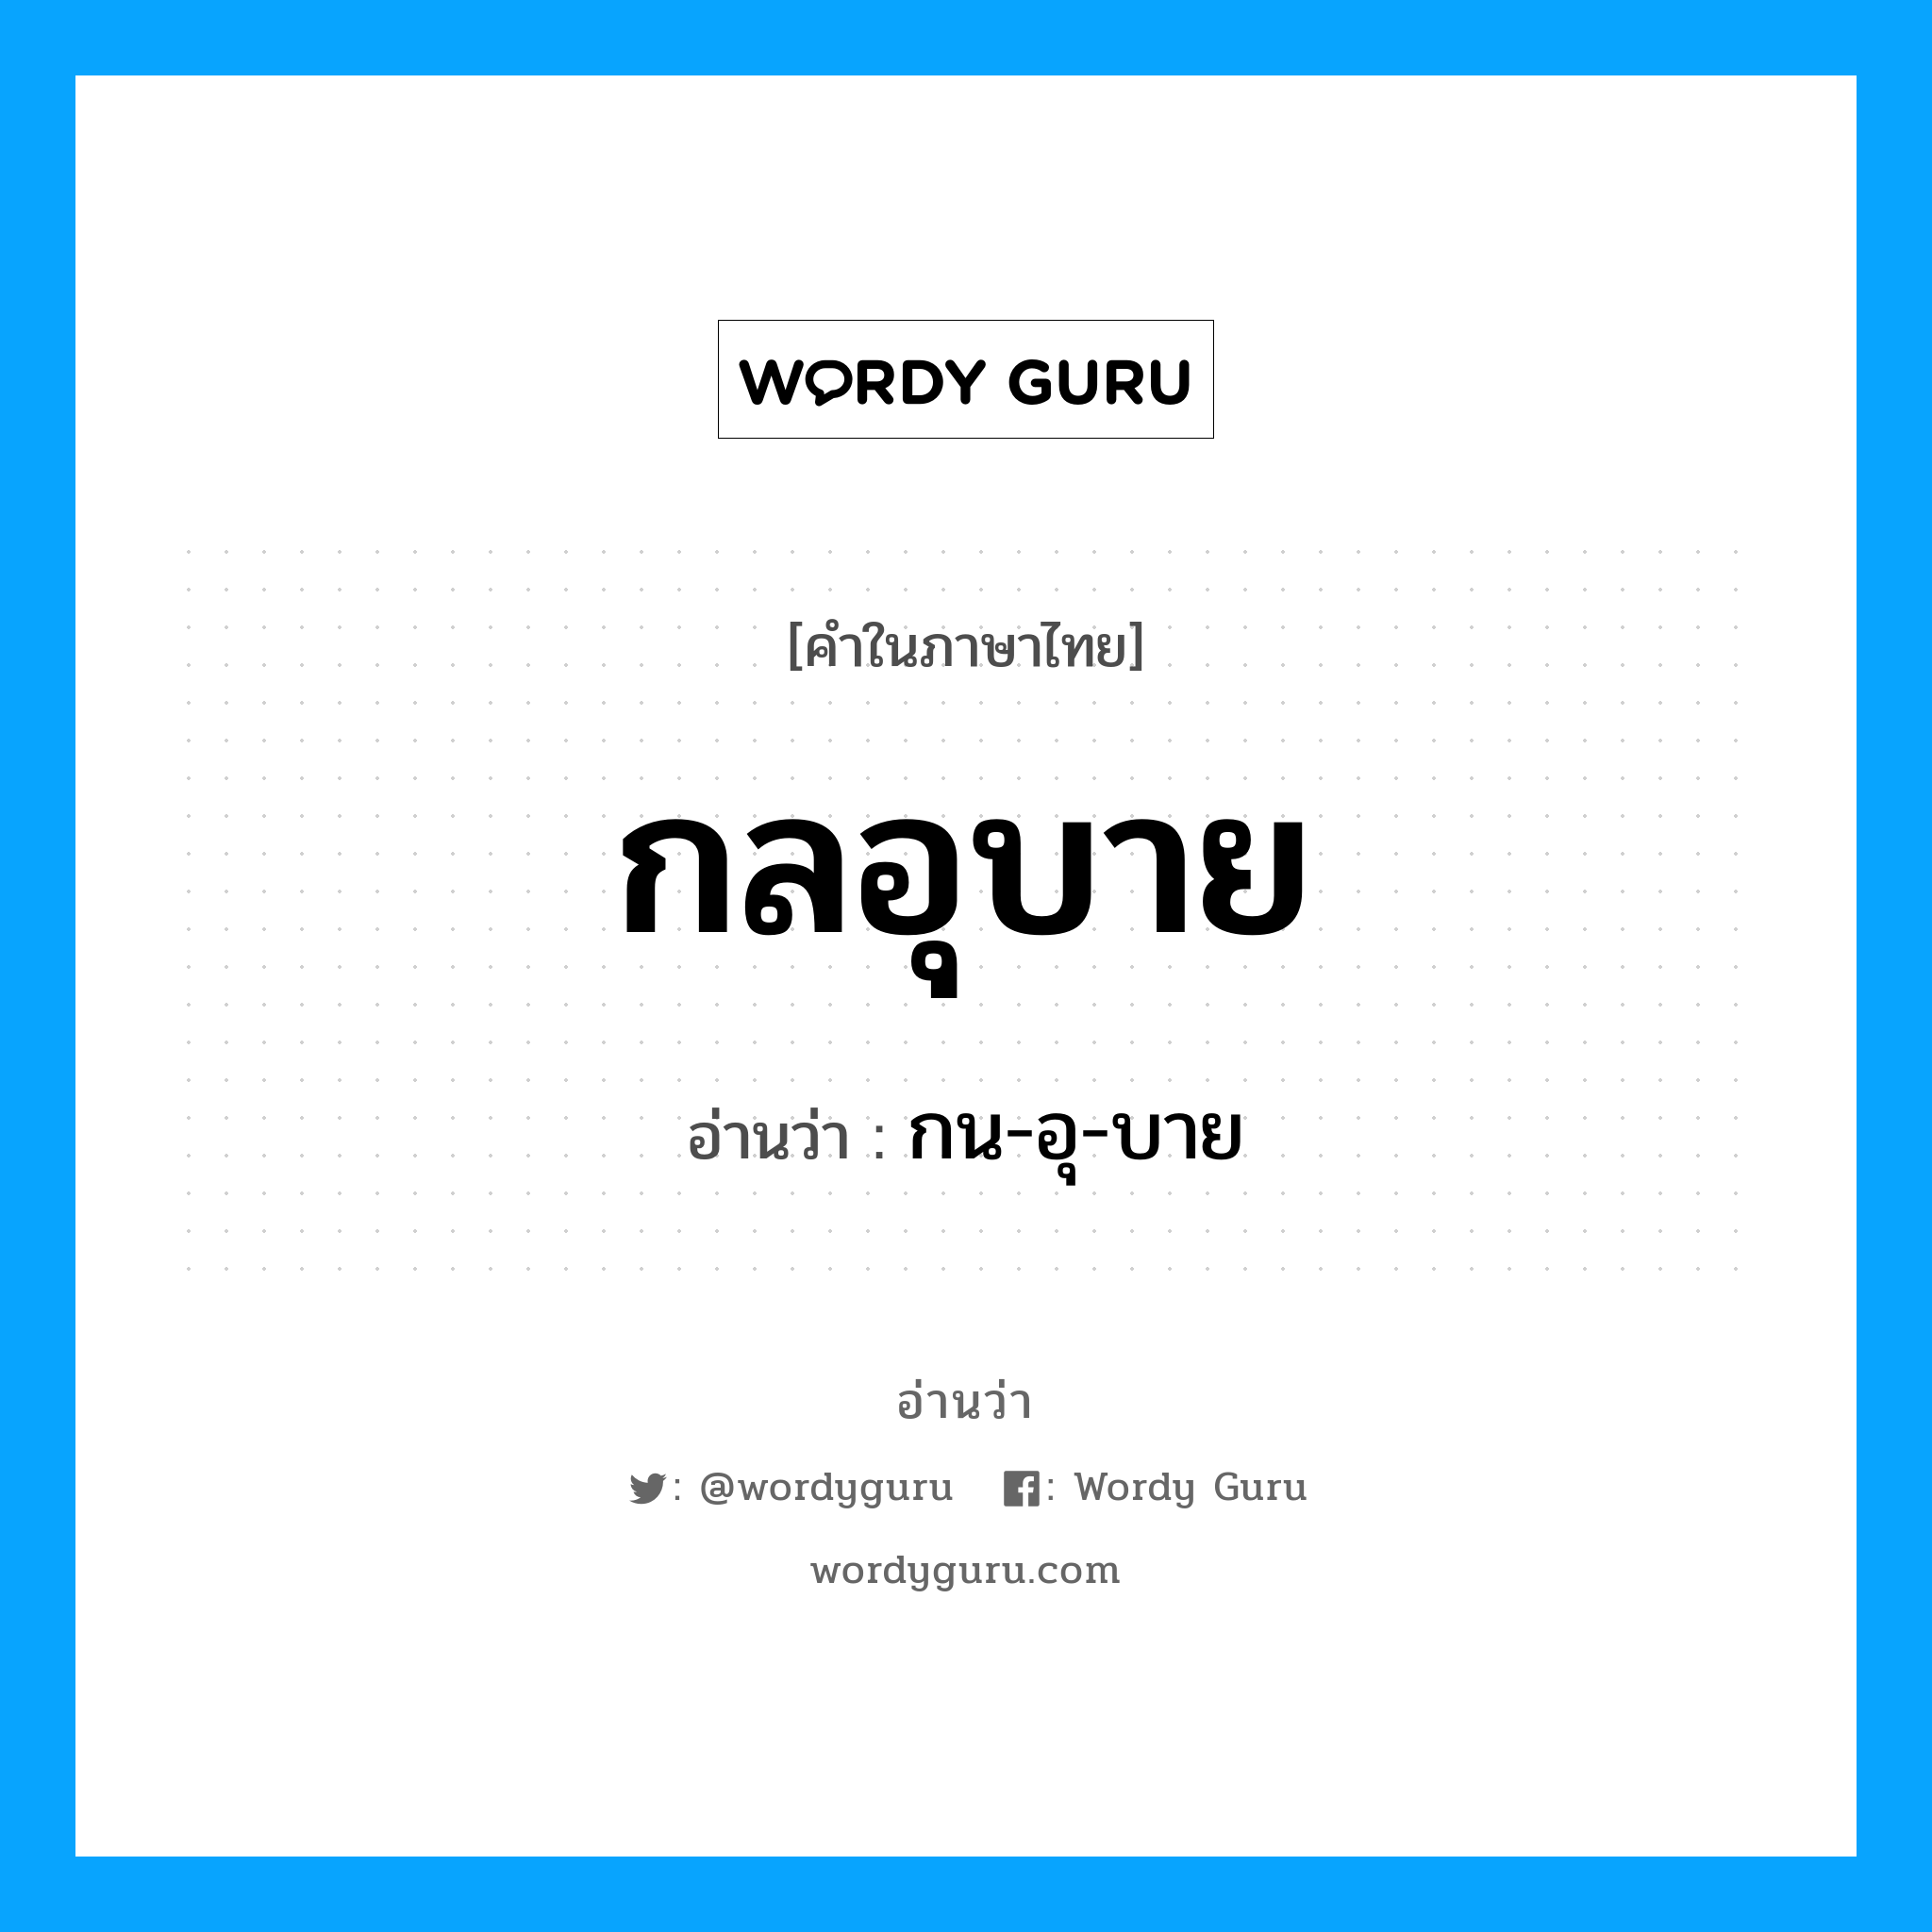 กน-อุ-บาย เป็นคำอ่านของคำไหน?, คำในภาษาไทย กน-อุ-บาย อ่านว่า กลอุบาย